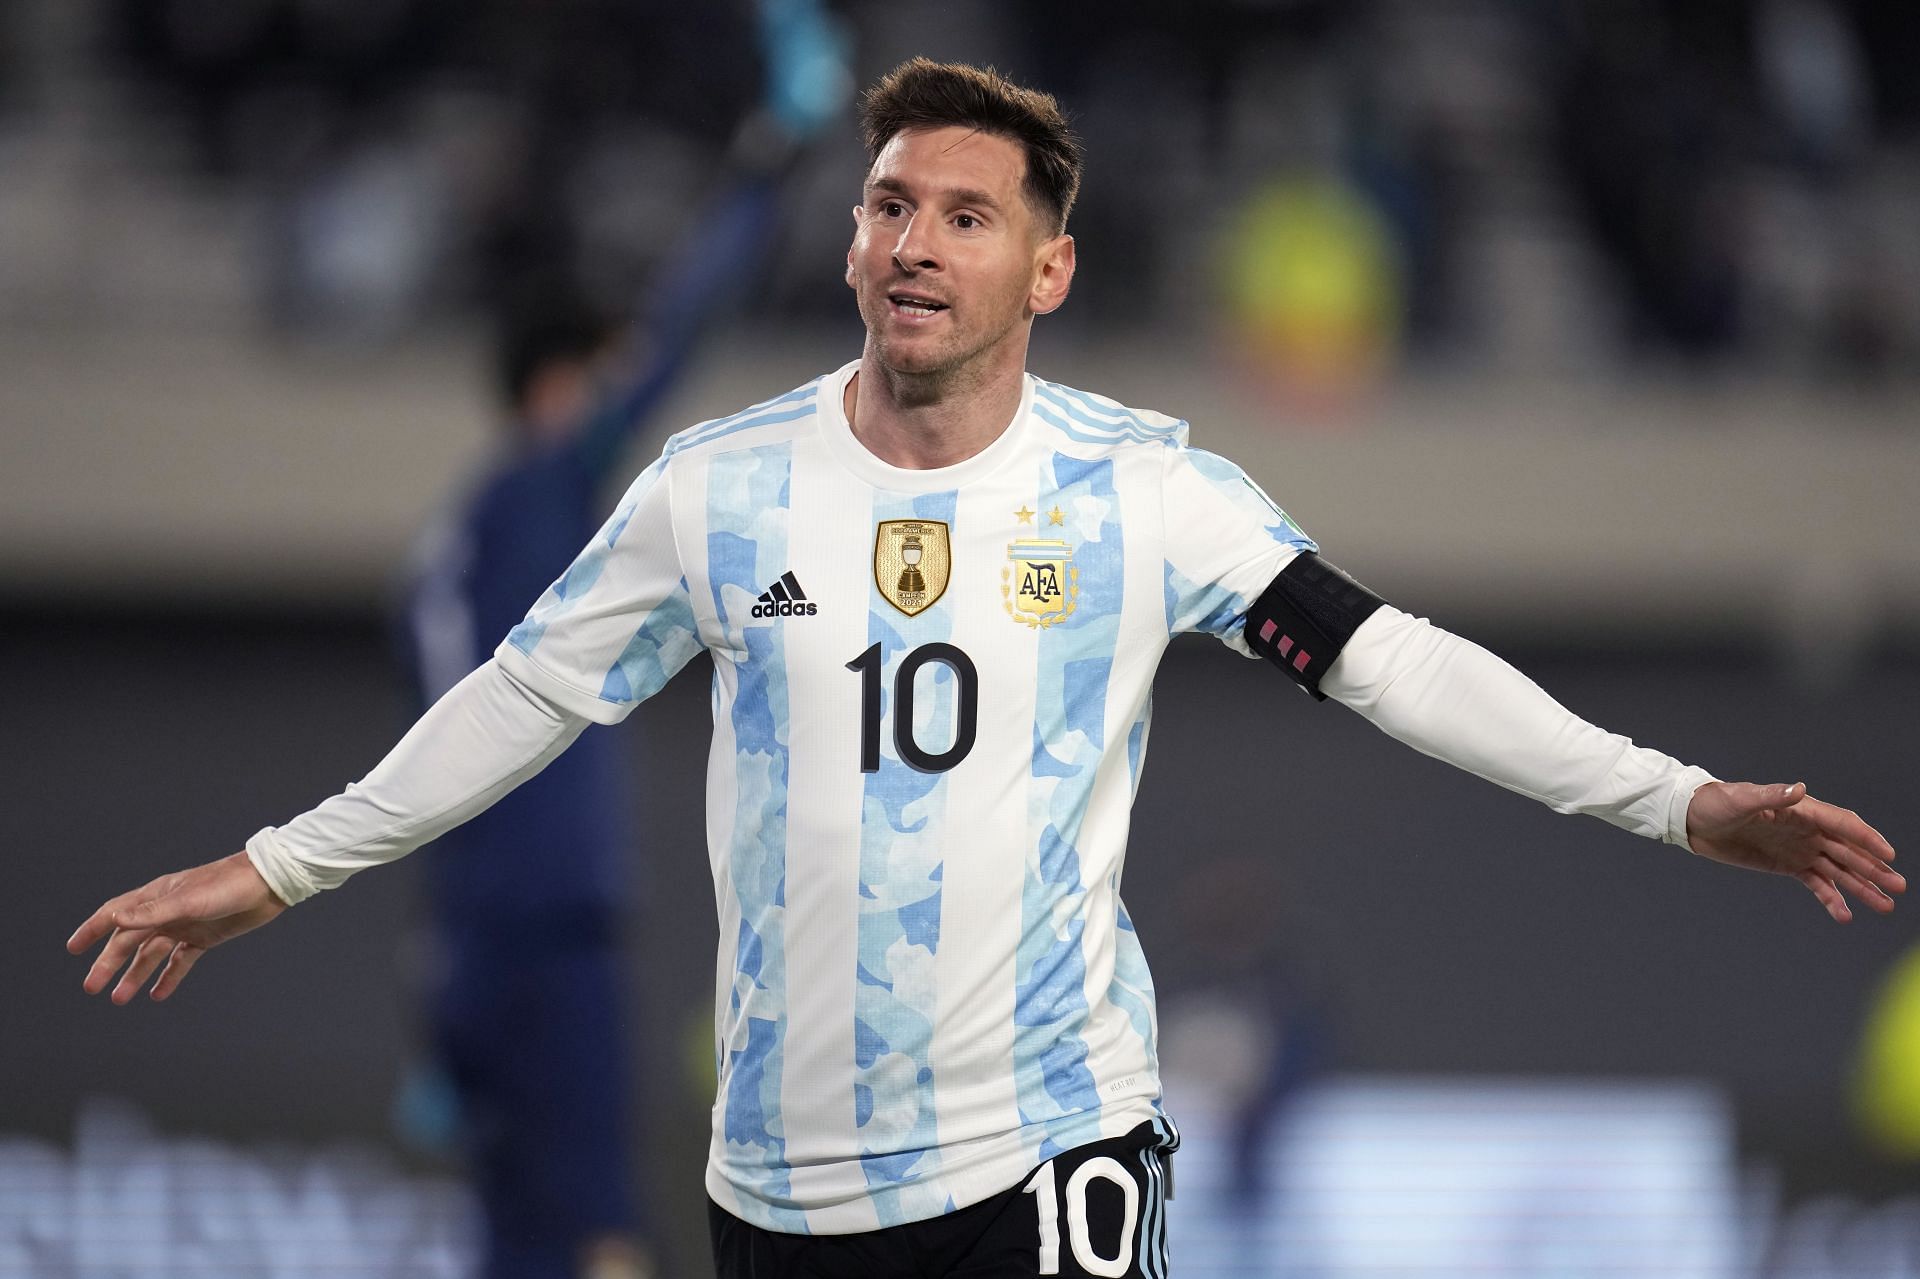 Lionel Messi led La Albiceleste will clash against Italy at Wembley Stadium